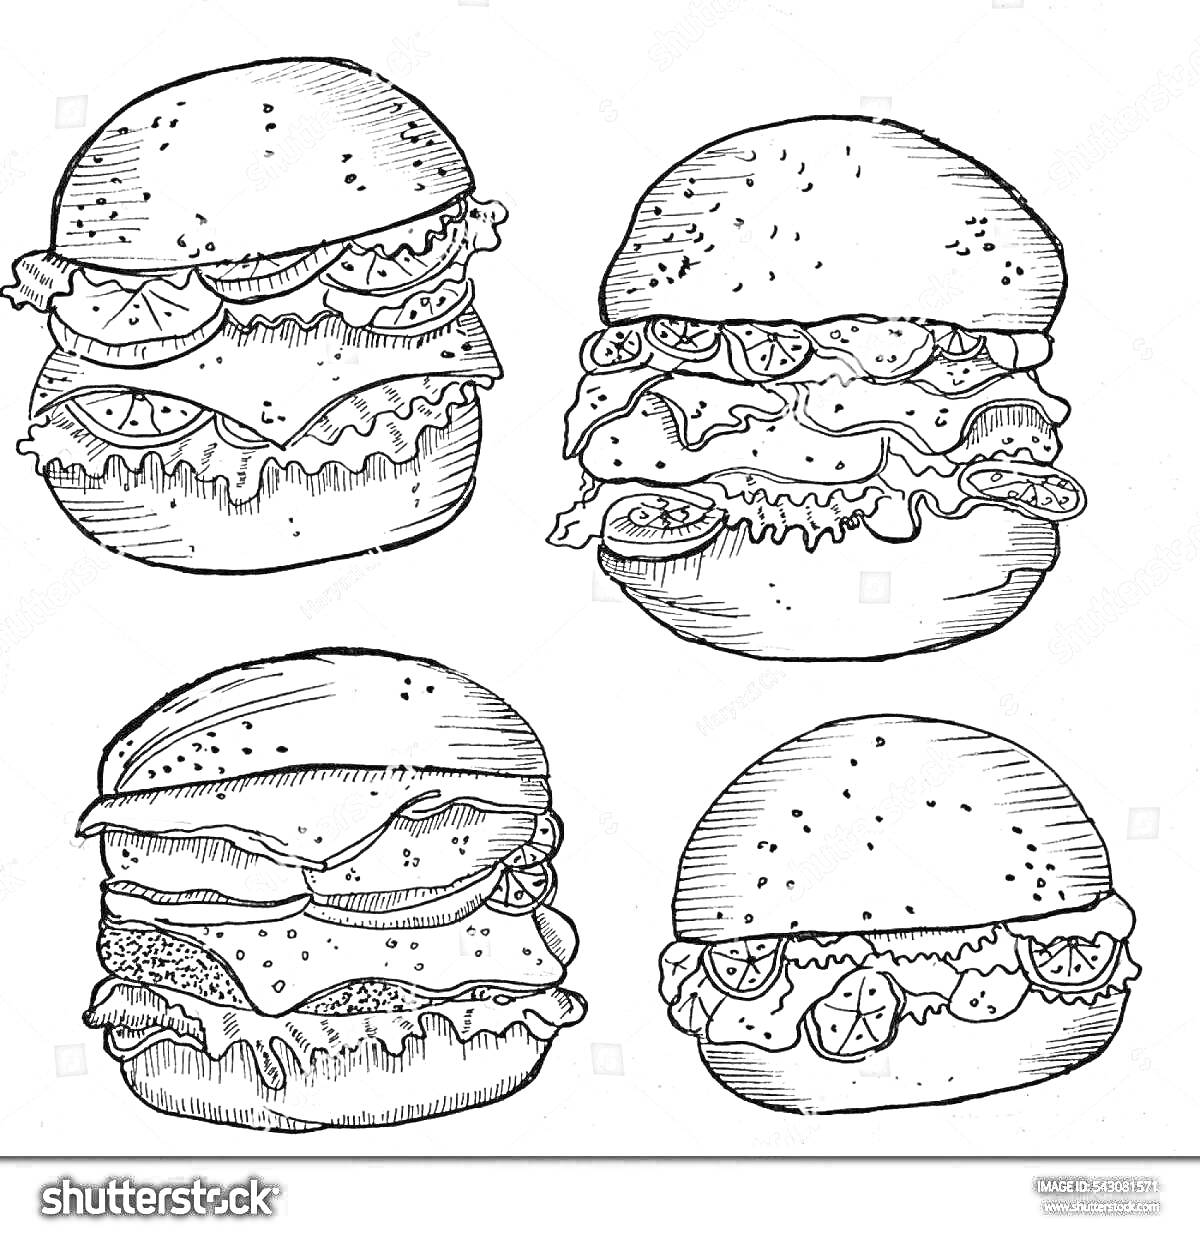 Раскраска Четыре гамбургера с различными ингредиентами, включая помидоры, салат, сыр и соусы